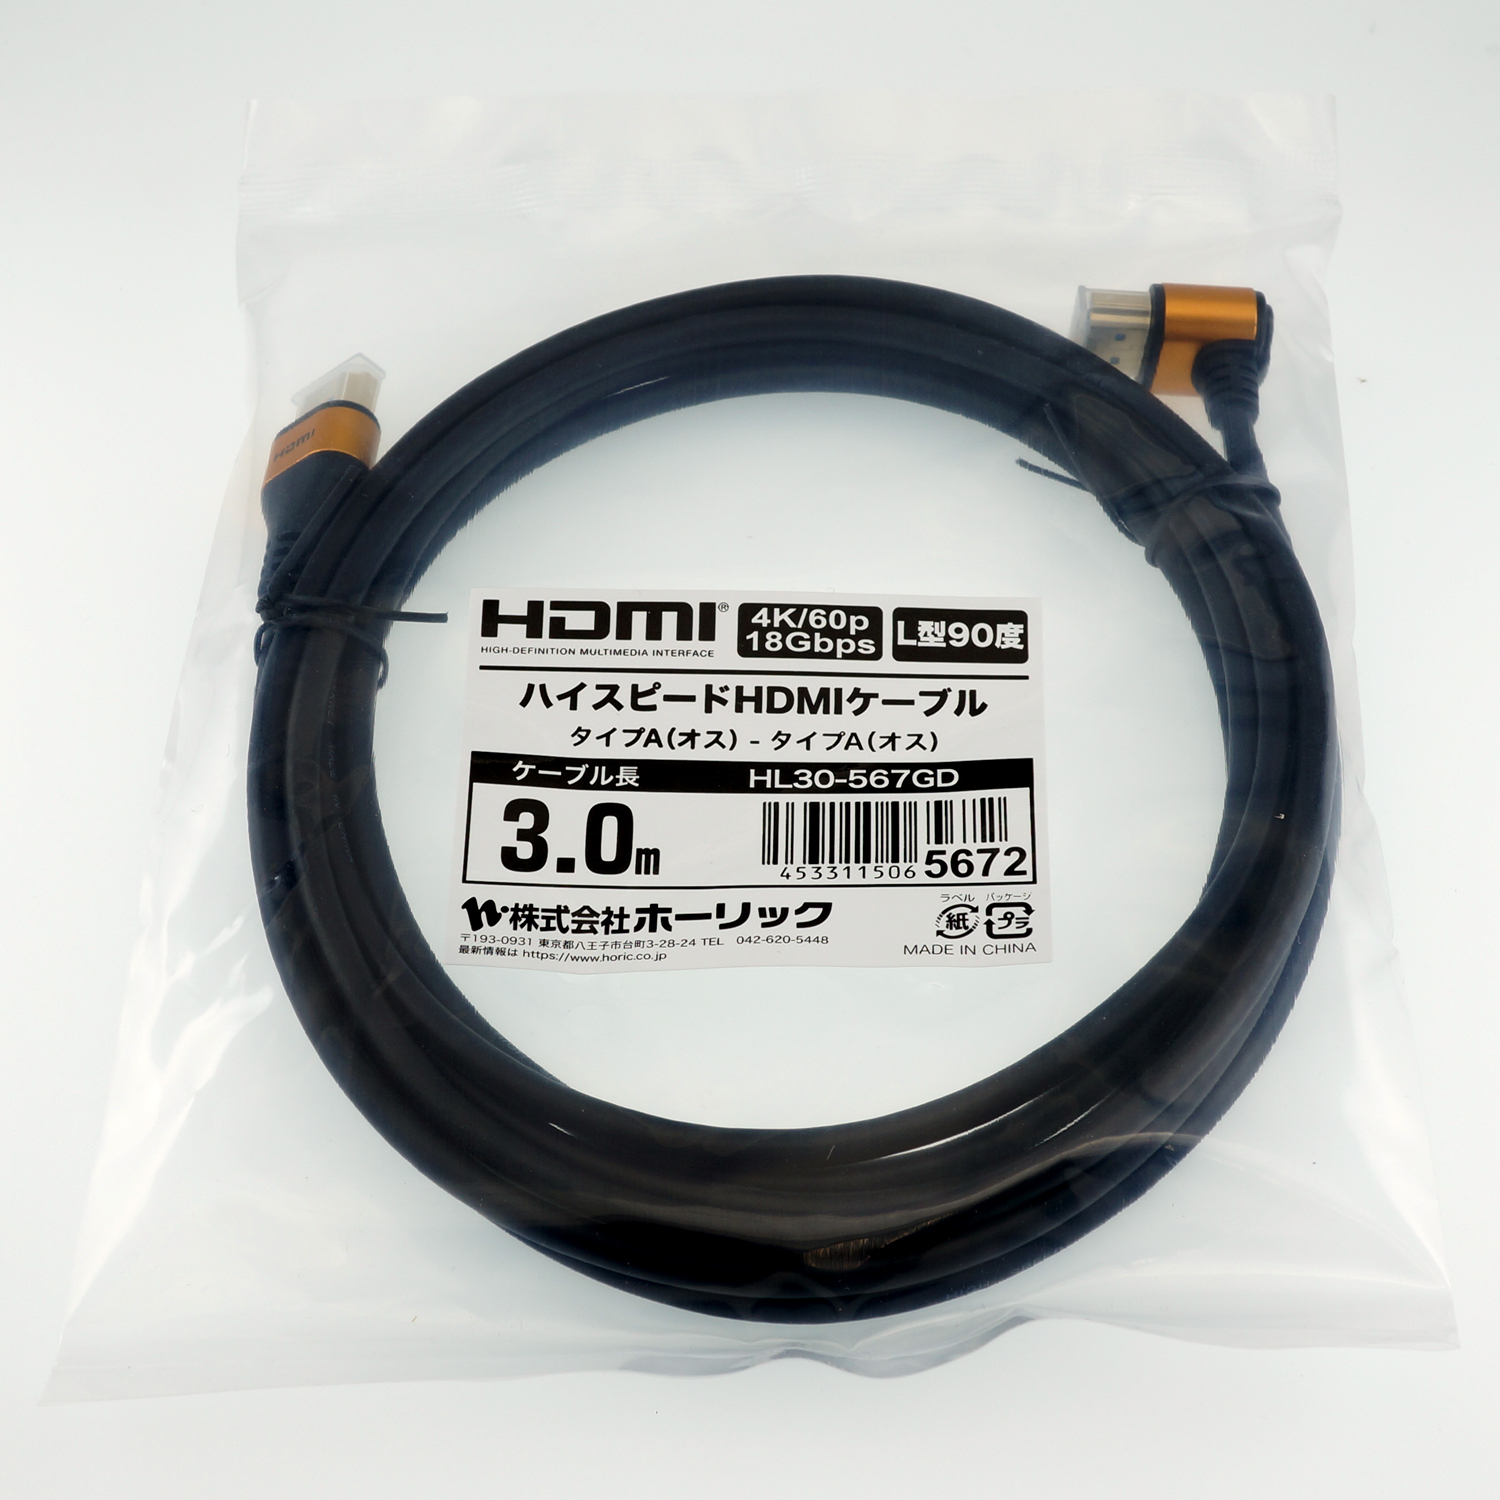 ホーリックダイレクト / HORIC ホーリック HDMIケーブル L型90度 3m 